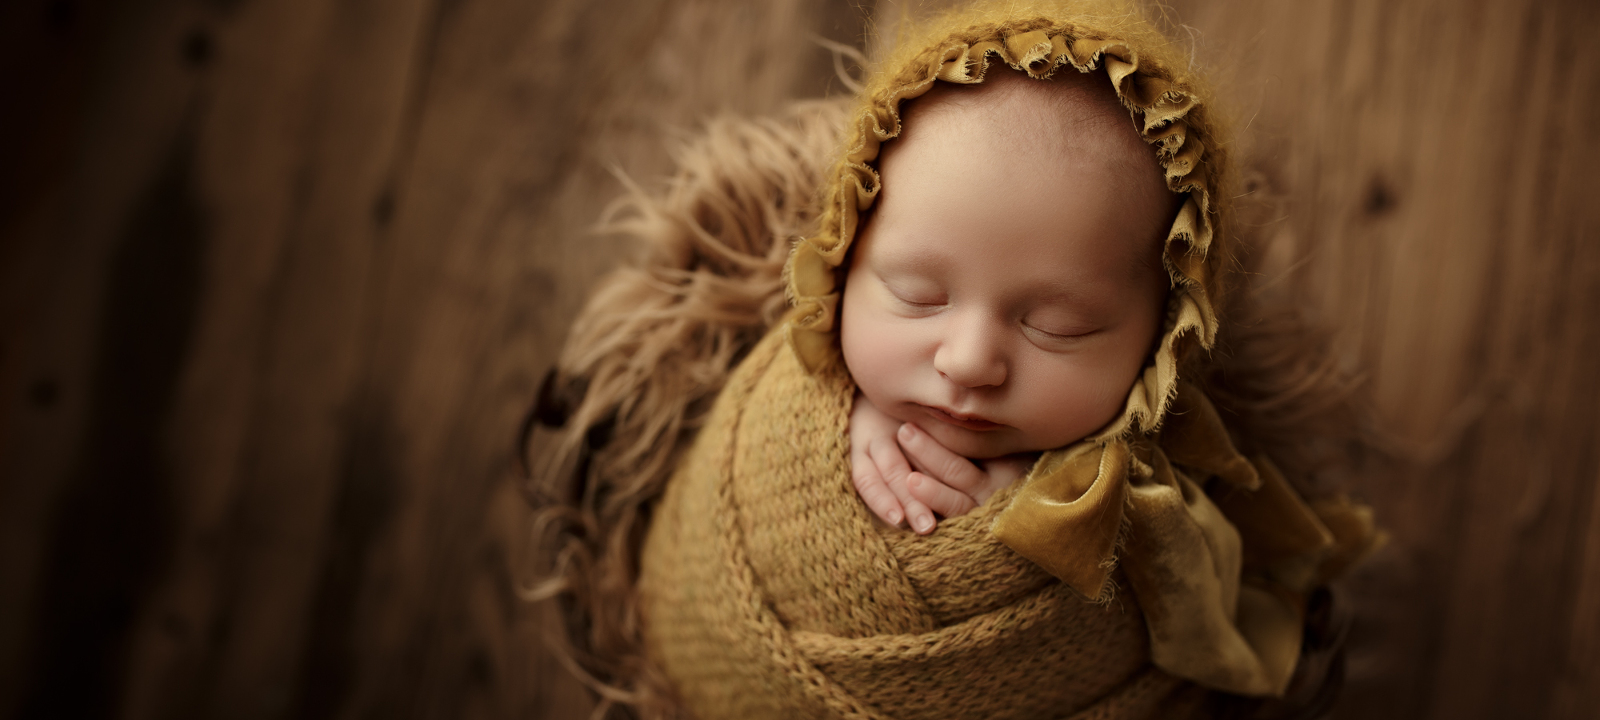 Atelier nordbrise Fine Art Fotografie | Newborn Baby Kind Familie Babybauch Newborn